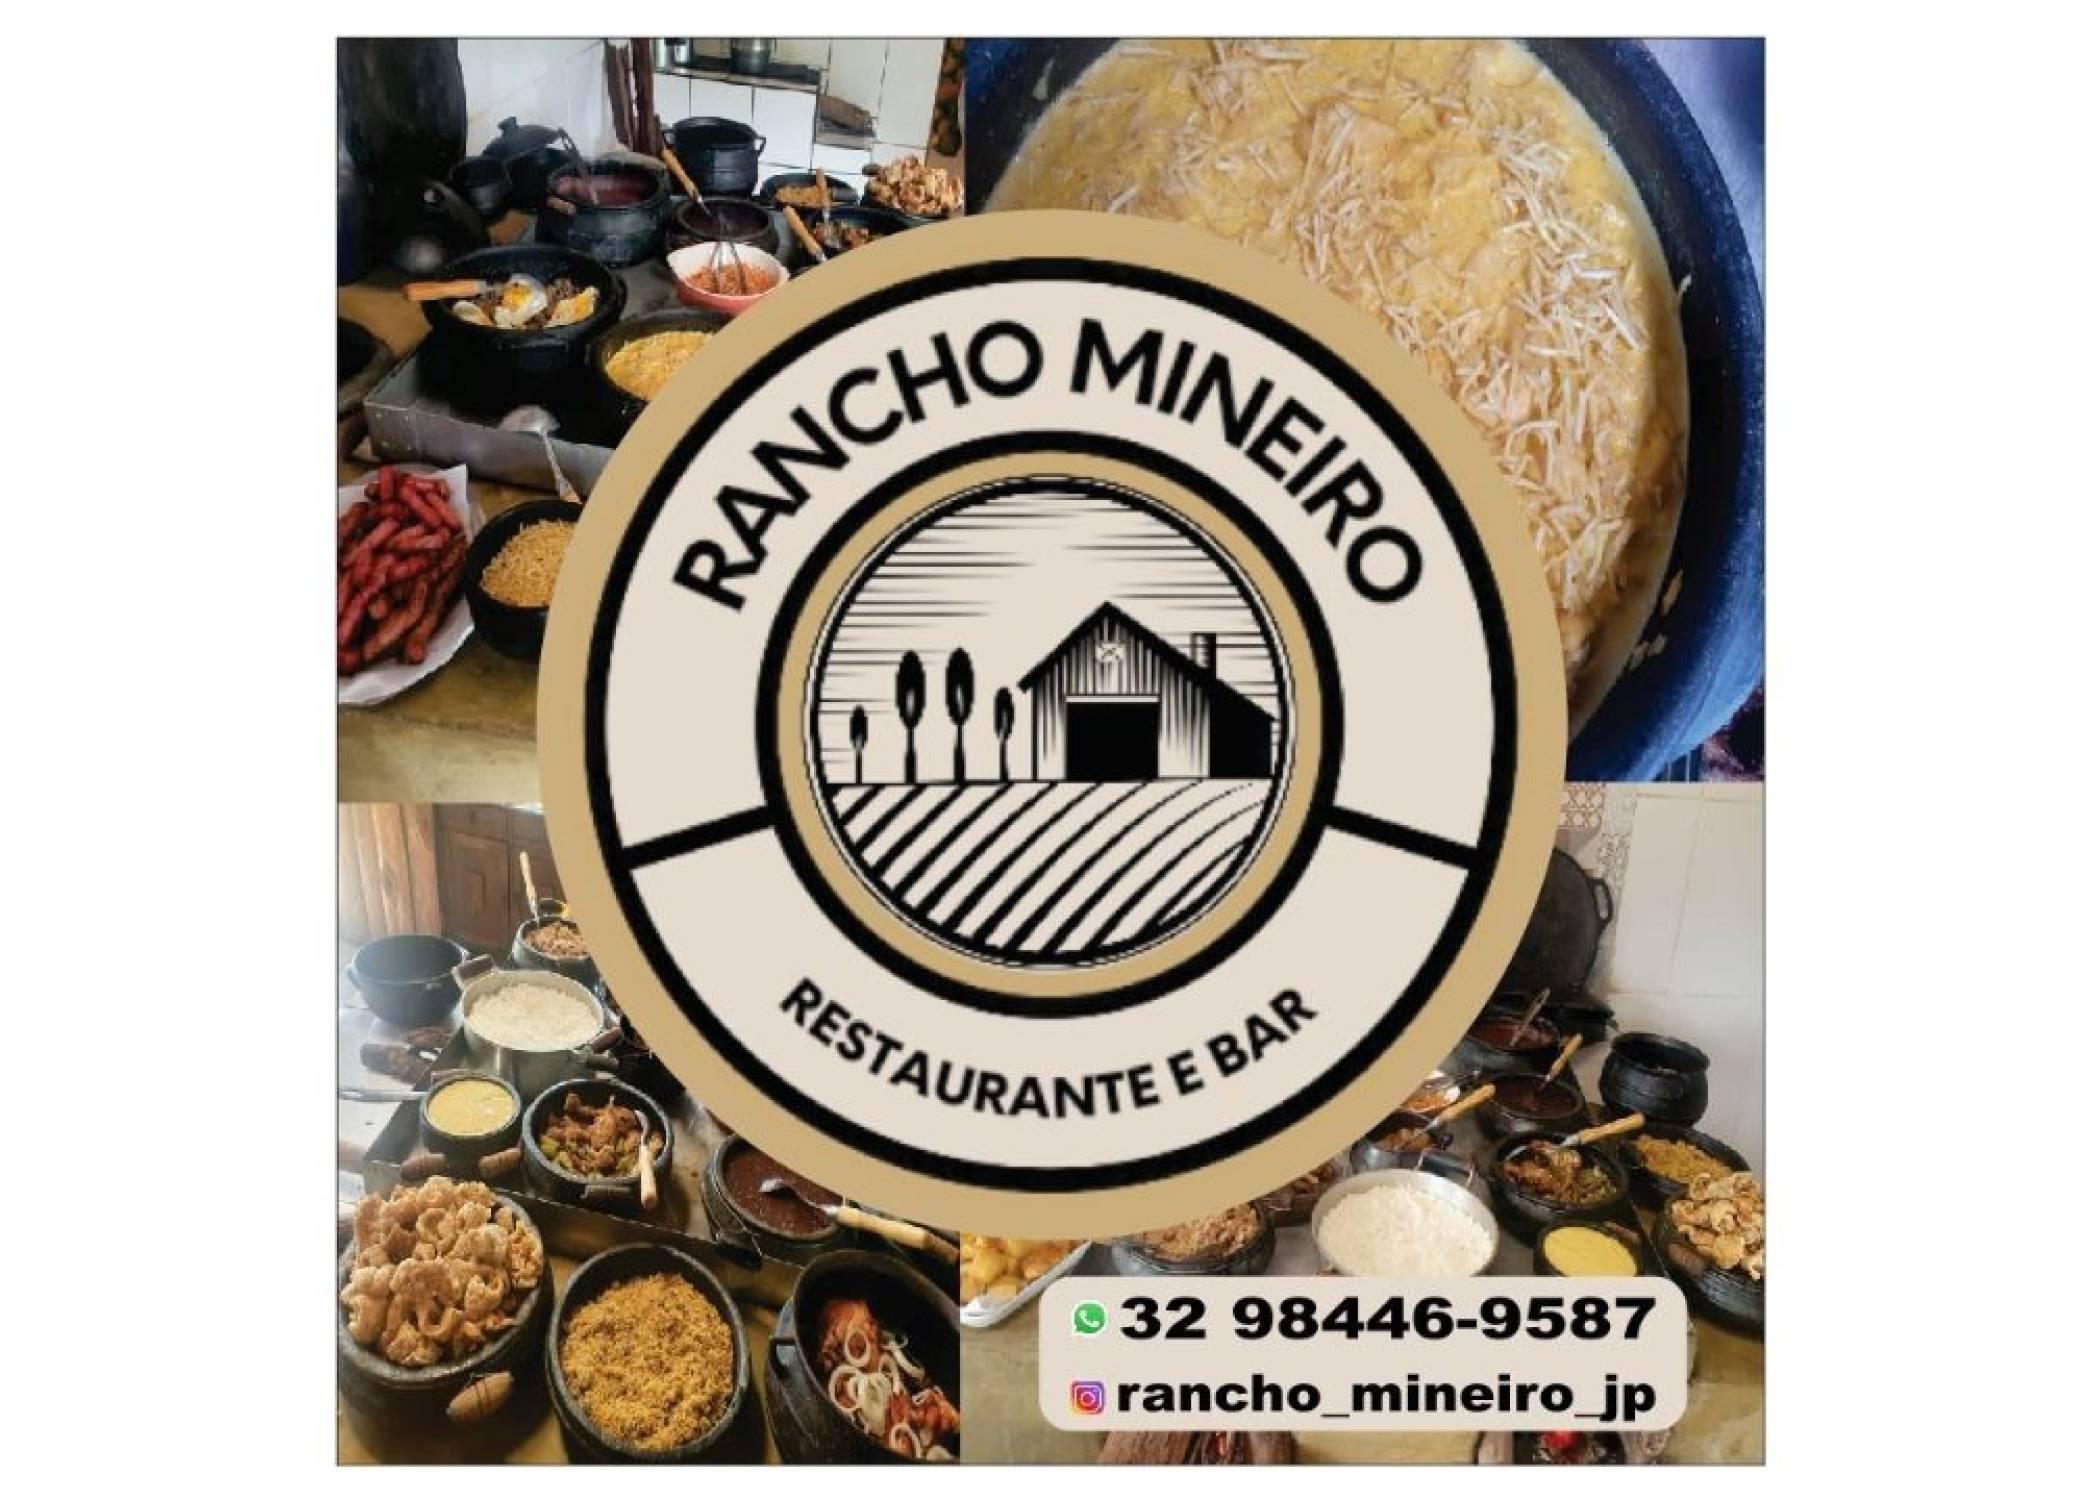 Restaurante Rancho Mineiro